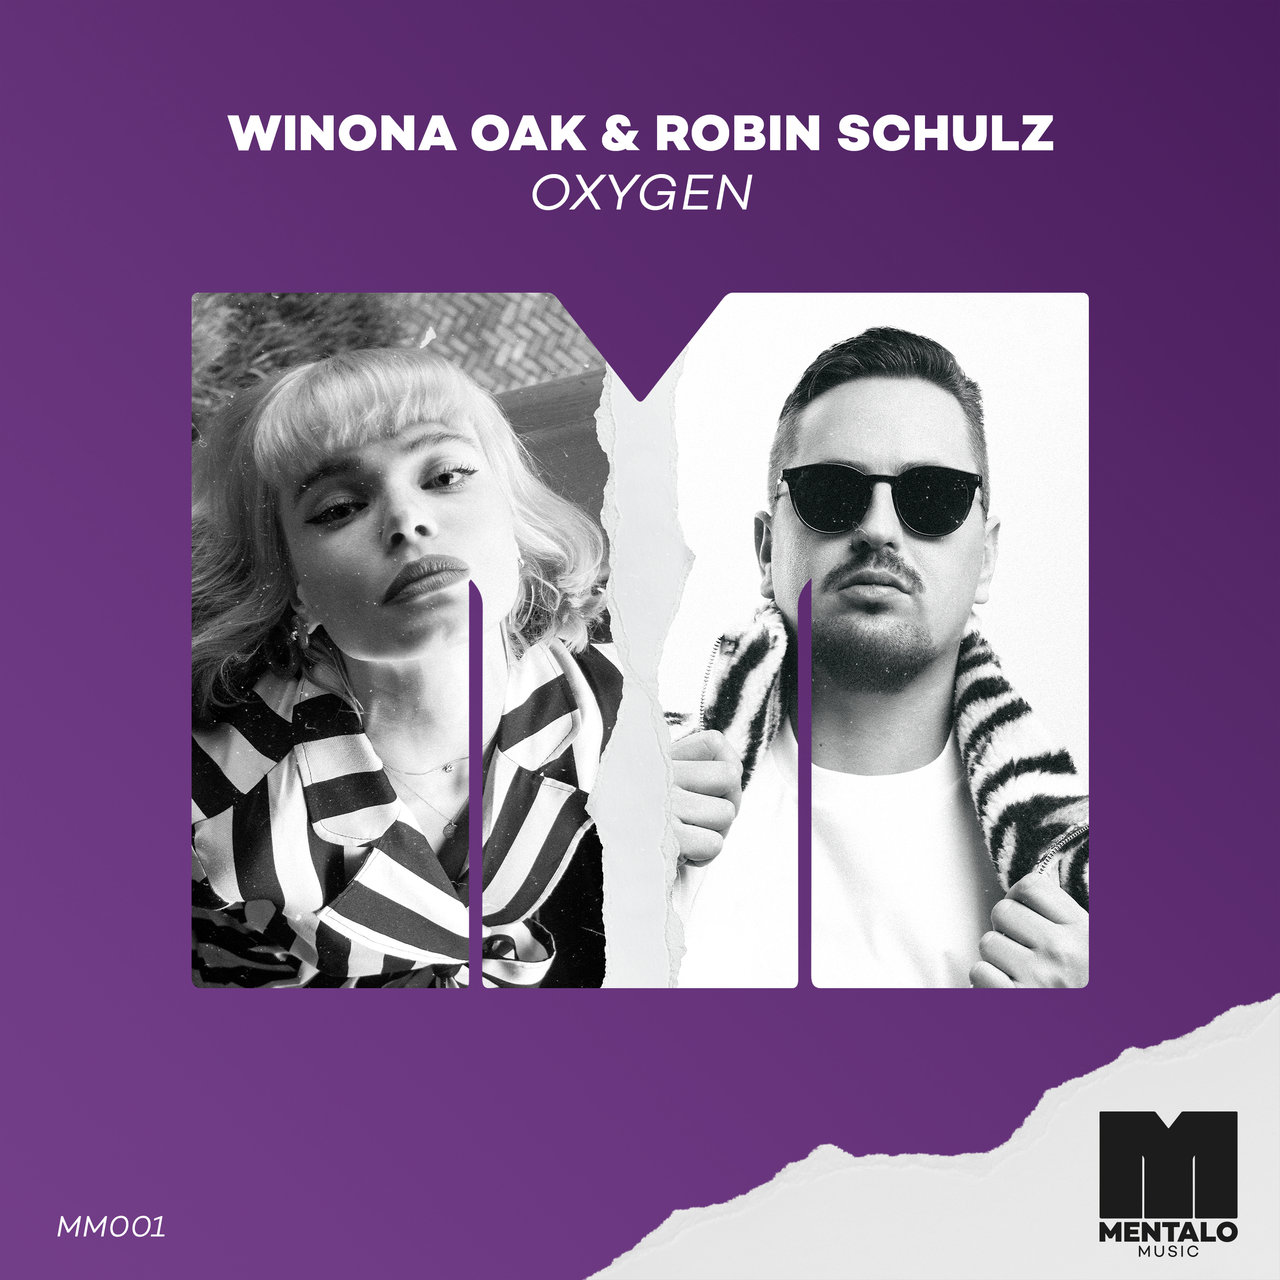 Winona Oak & Robin Schulz Oxygen cover artwork